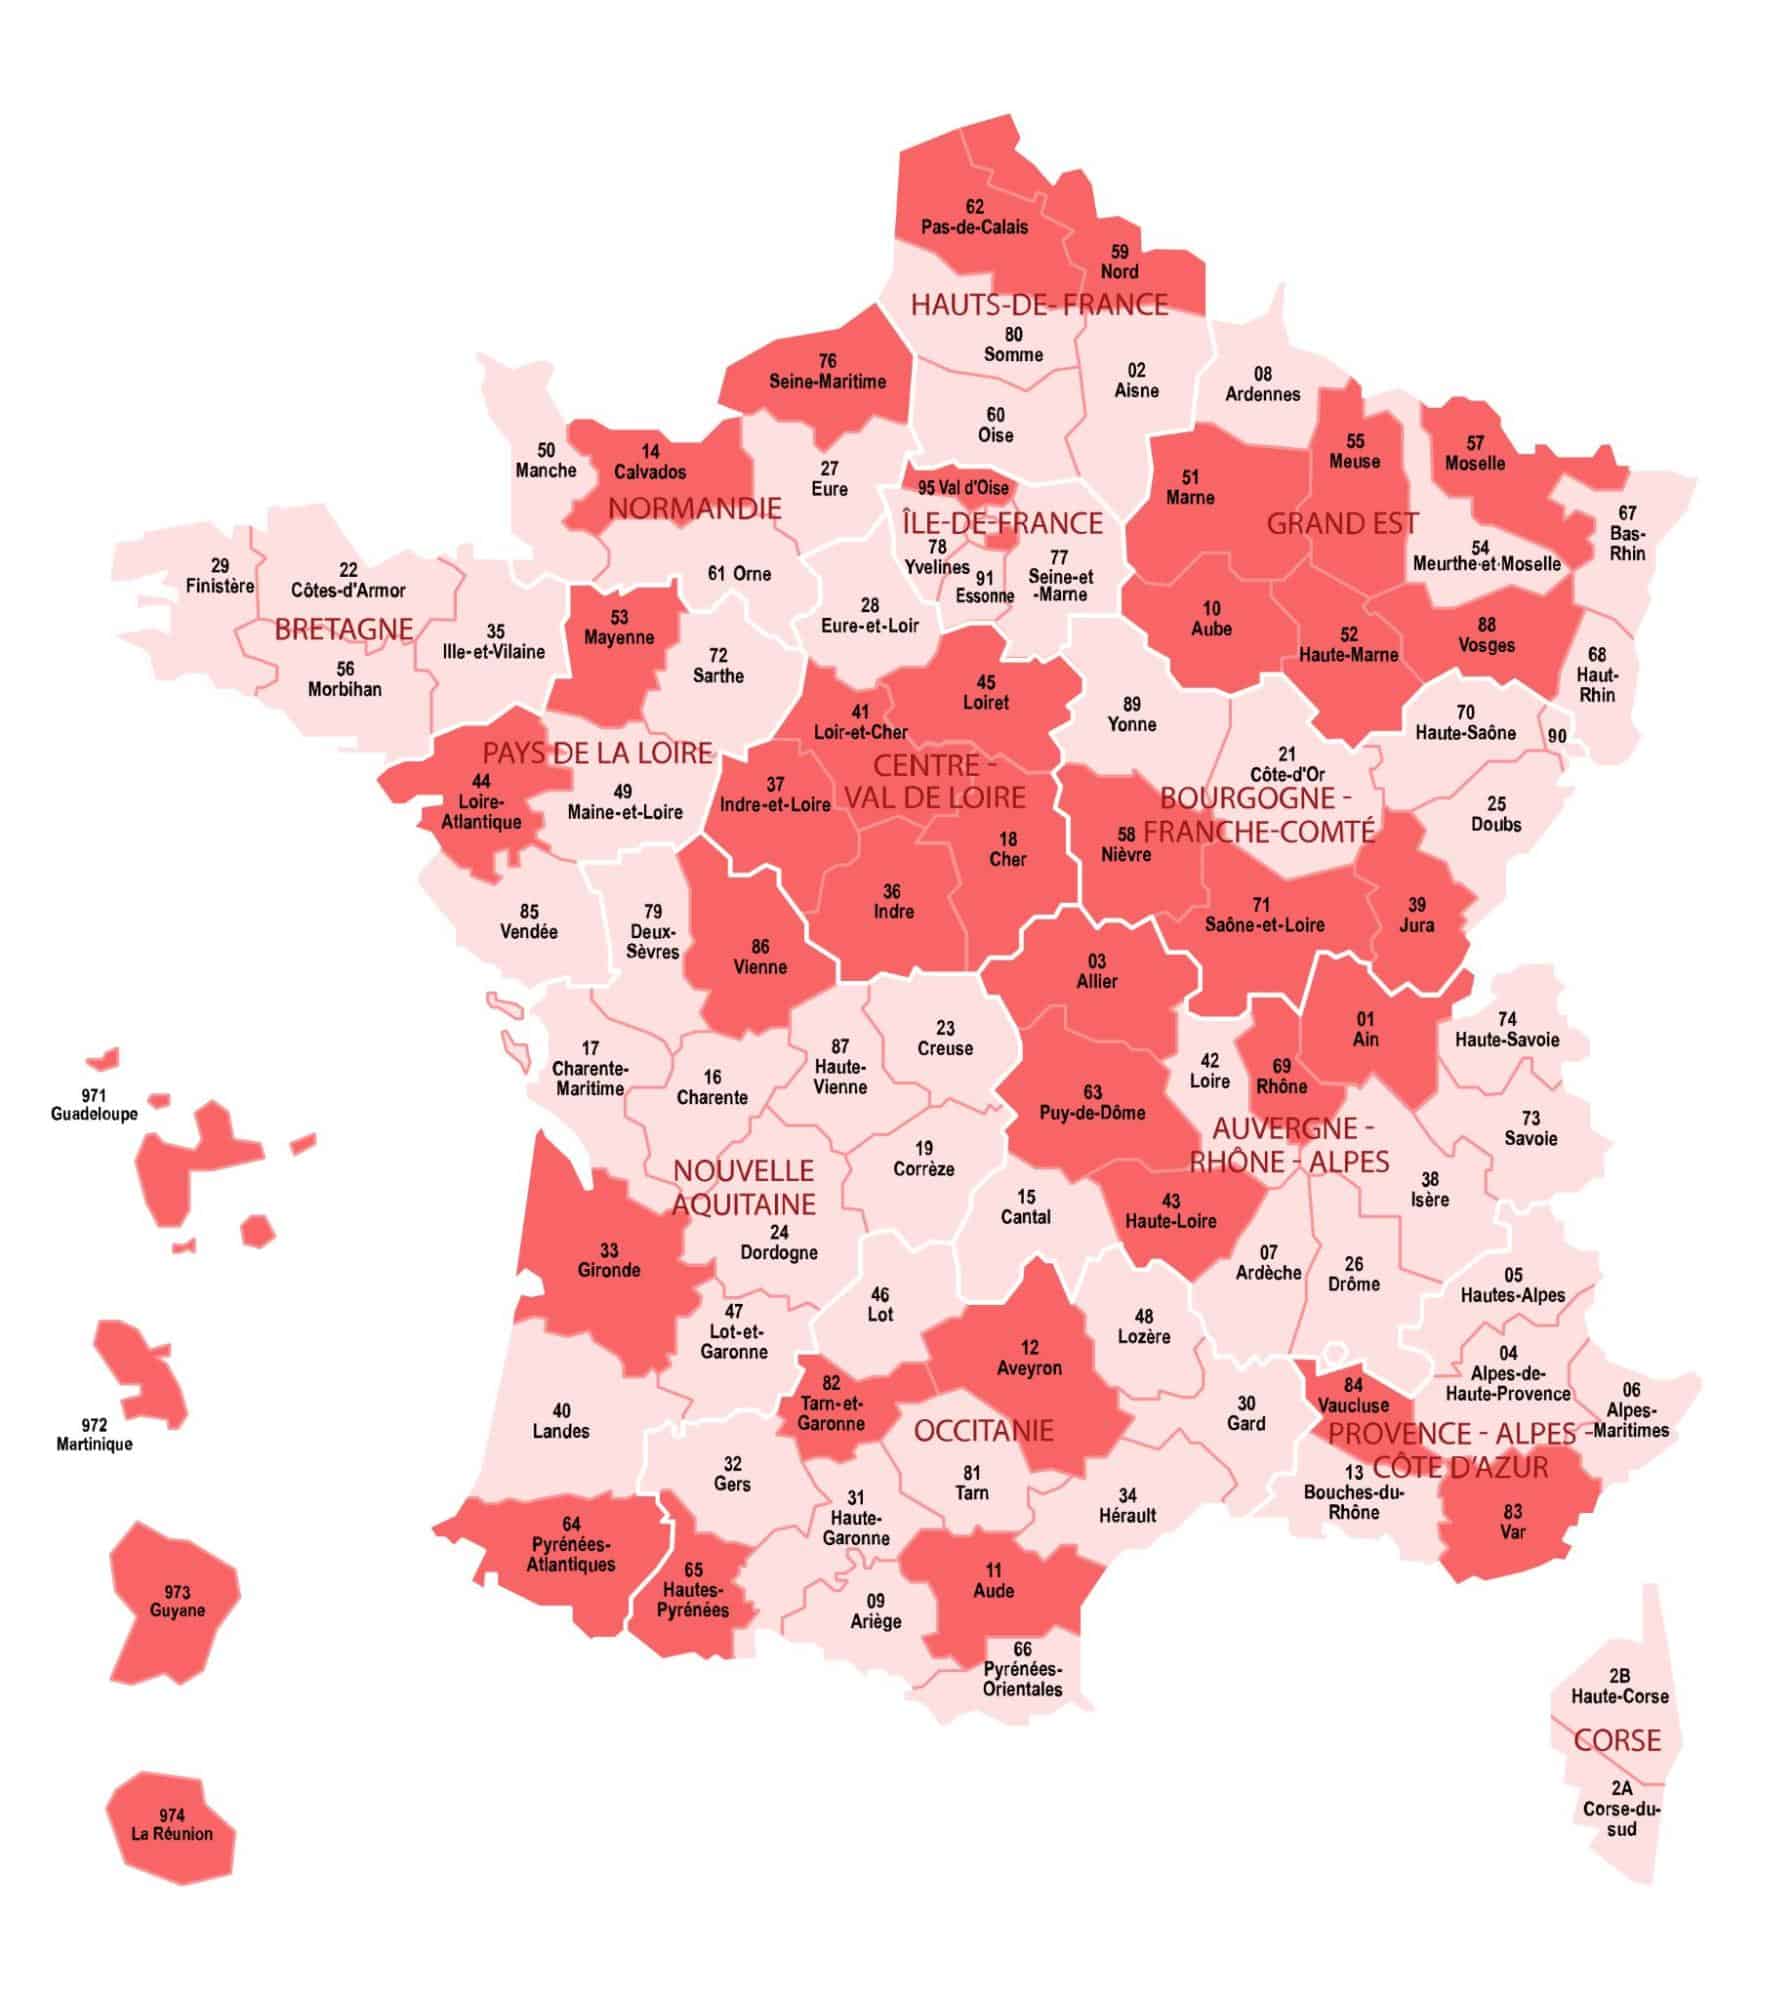 Os departamentos em rosa escuro mostram a cobertura geográfica dos registros paroquiais de batismo, casamento e óbito nas coleções francesas do MyHeritage